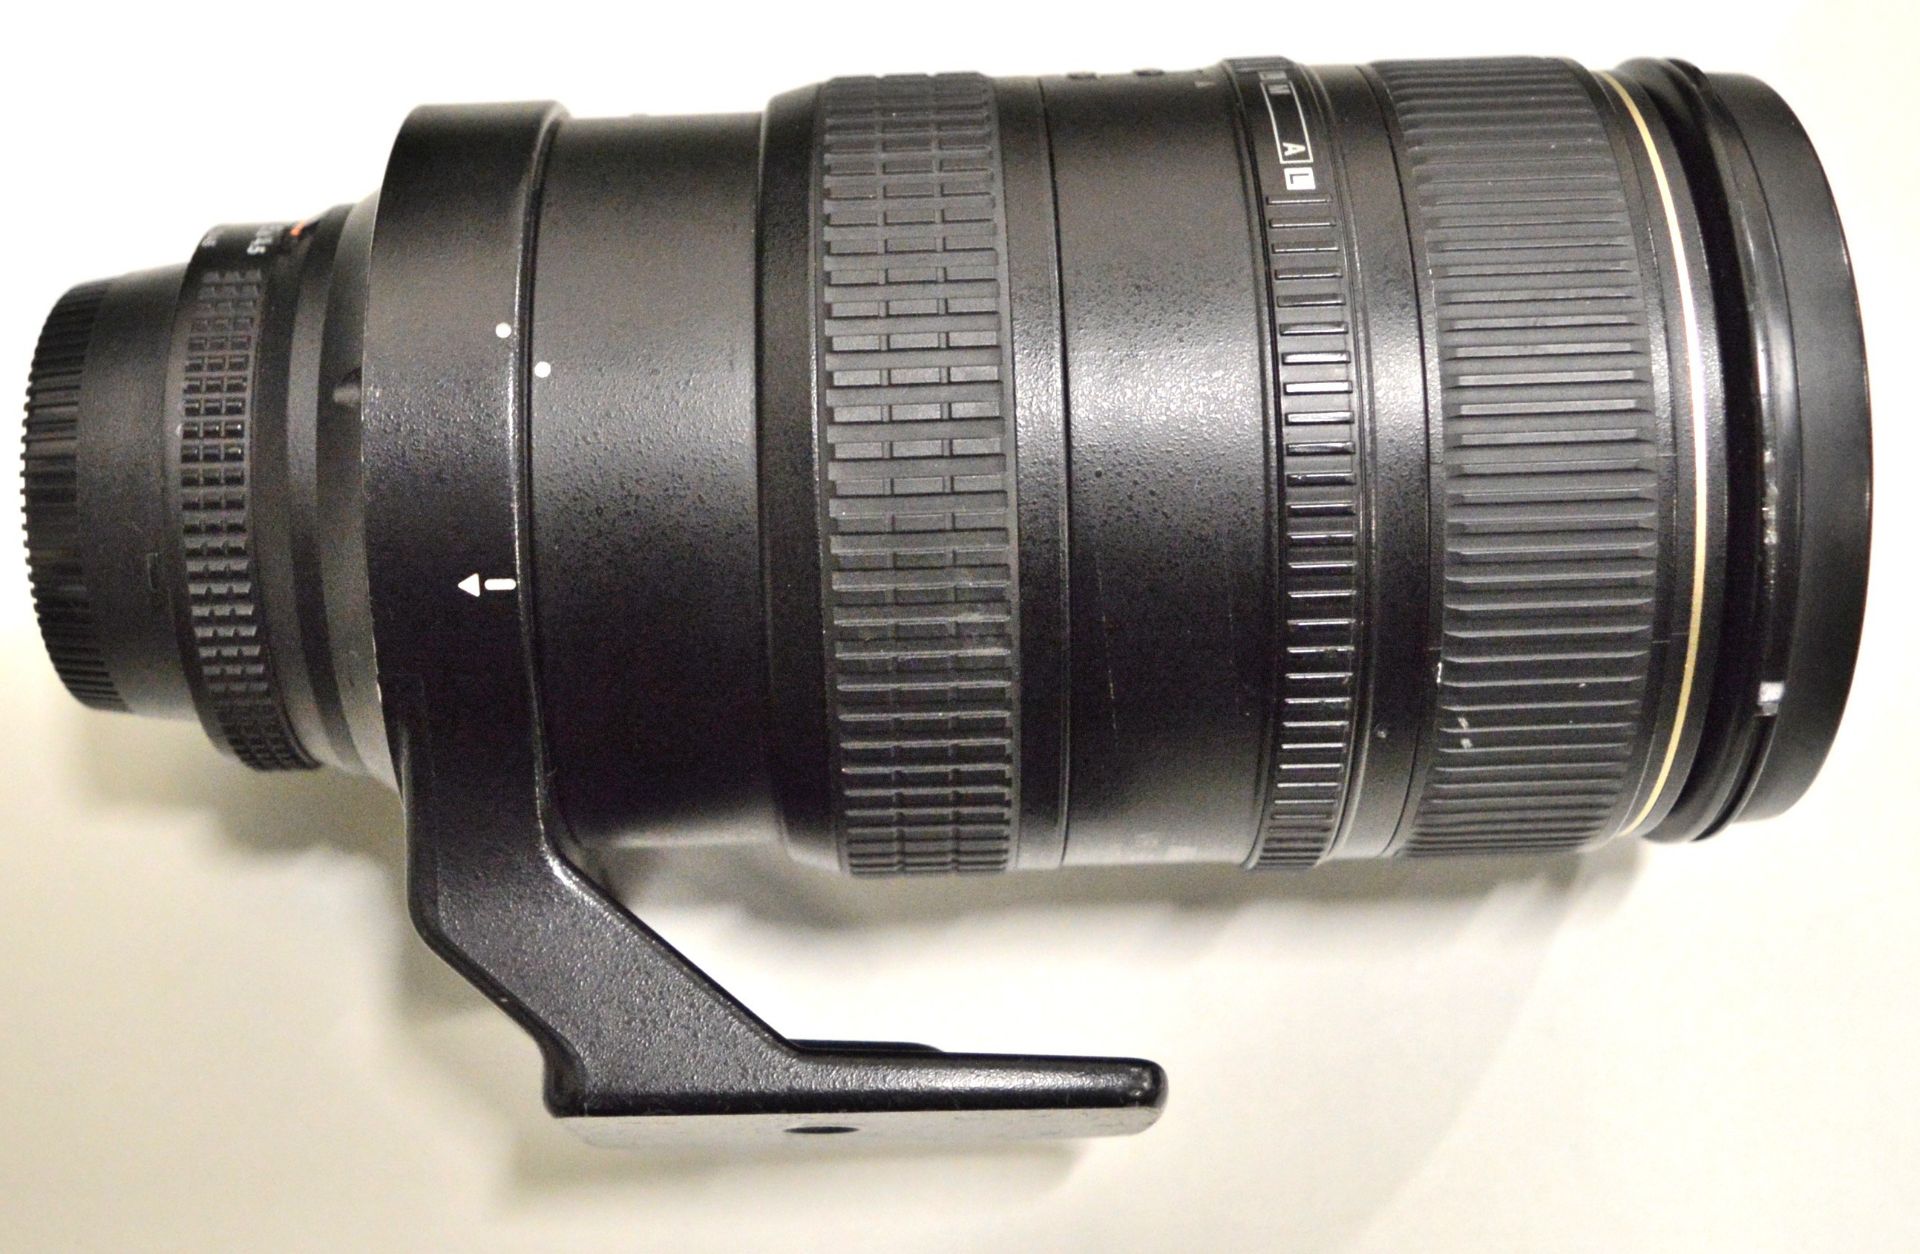 Nikon Lens AF-Nikkor 80-400mm 1:4.5-5.6D - Serial No. 239811. - Image 4 of 6